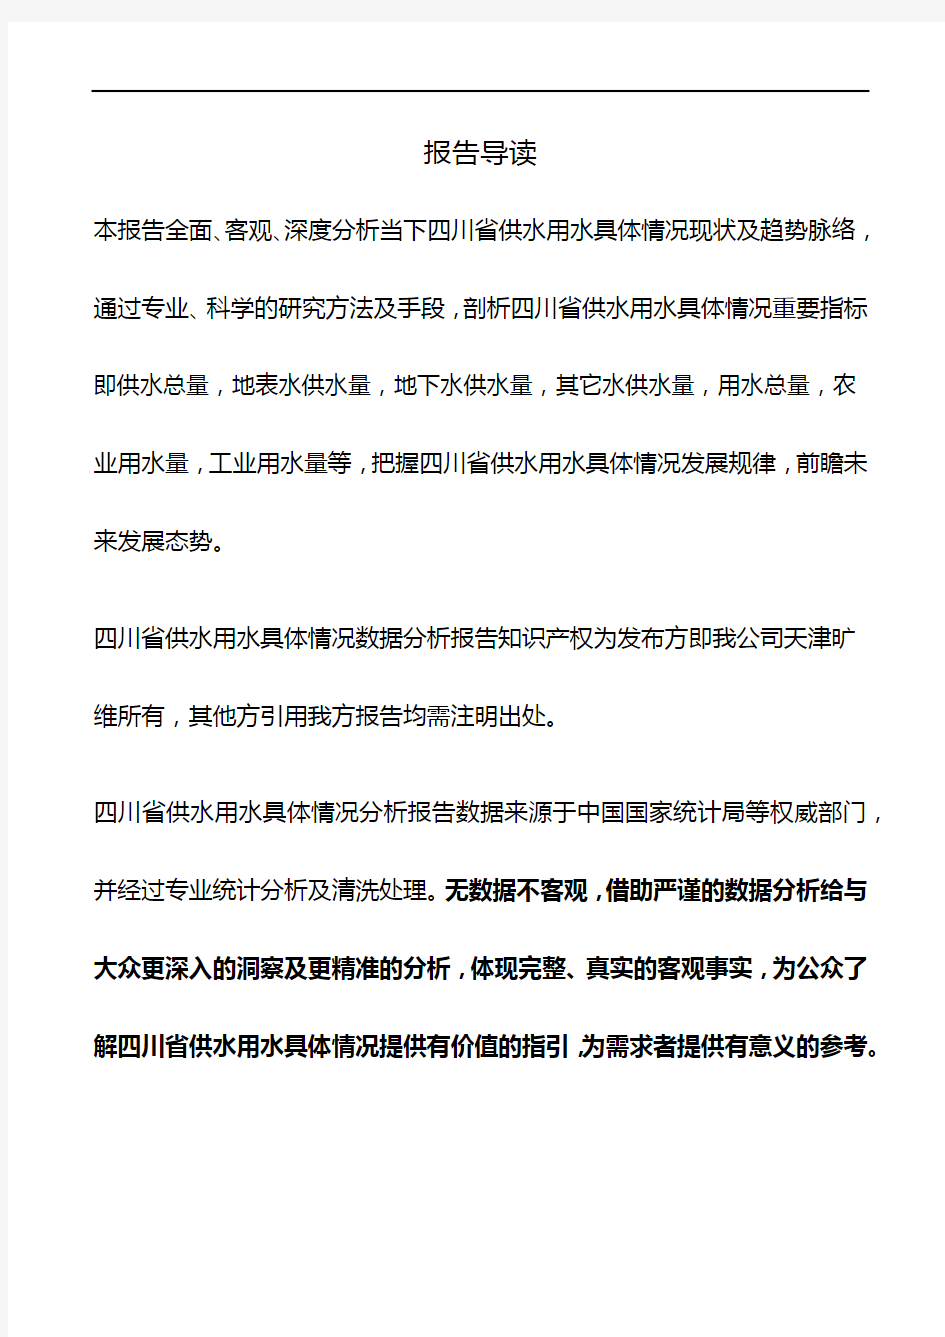 四川省供水用水具体情况3年数据分析报告2019版